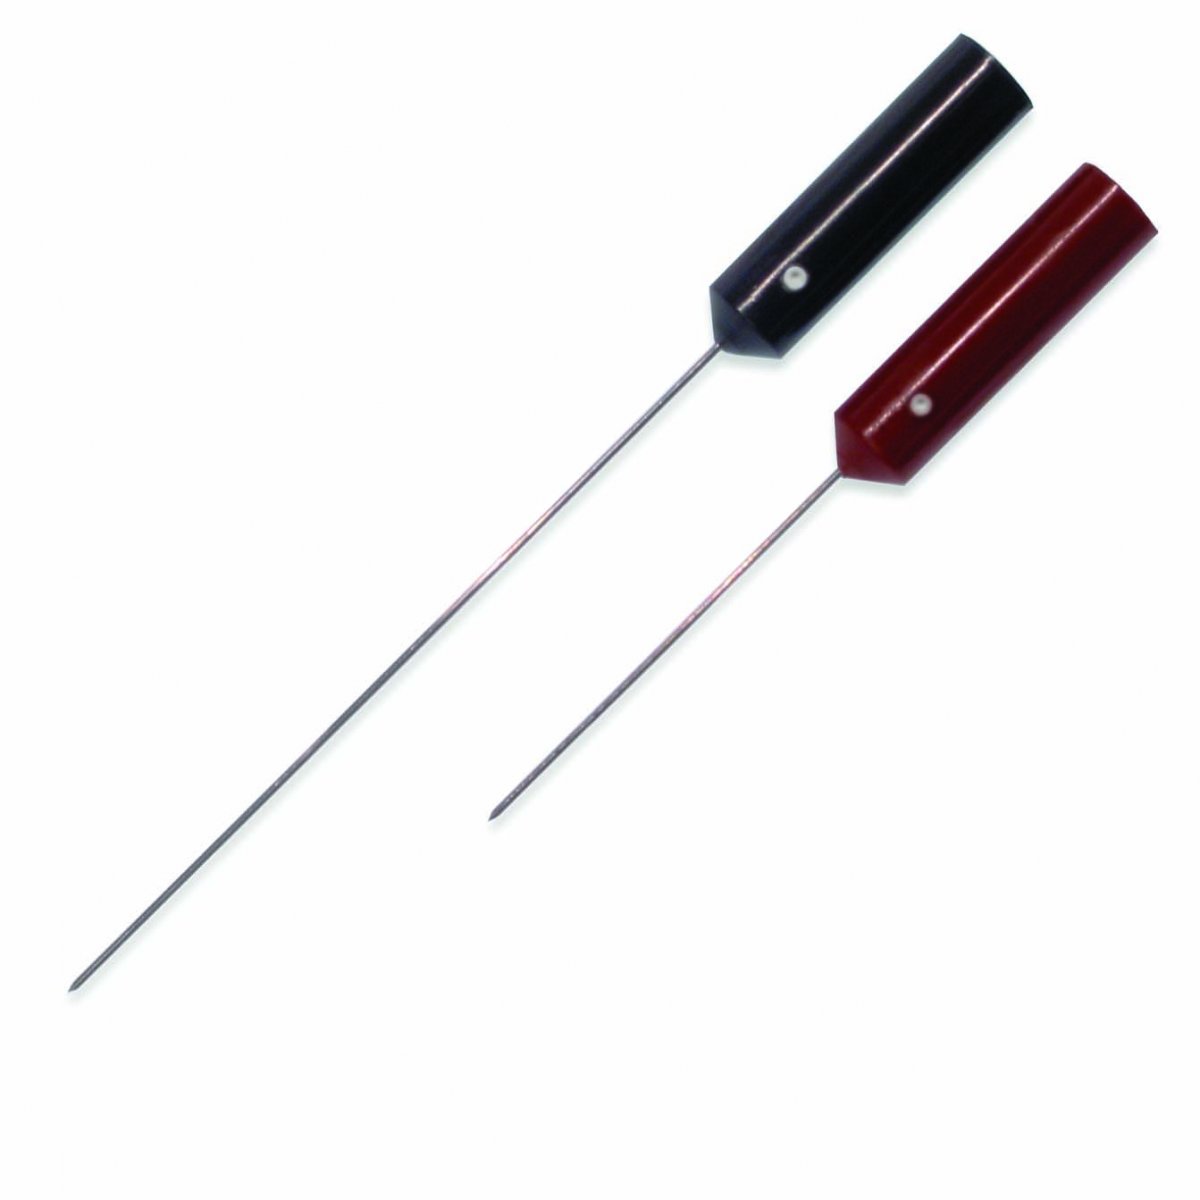 Sterilizovatelná single fiber jehlová elektroda Technomed: 40mm x 0,45mm (černá)